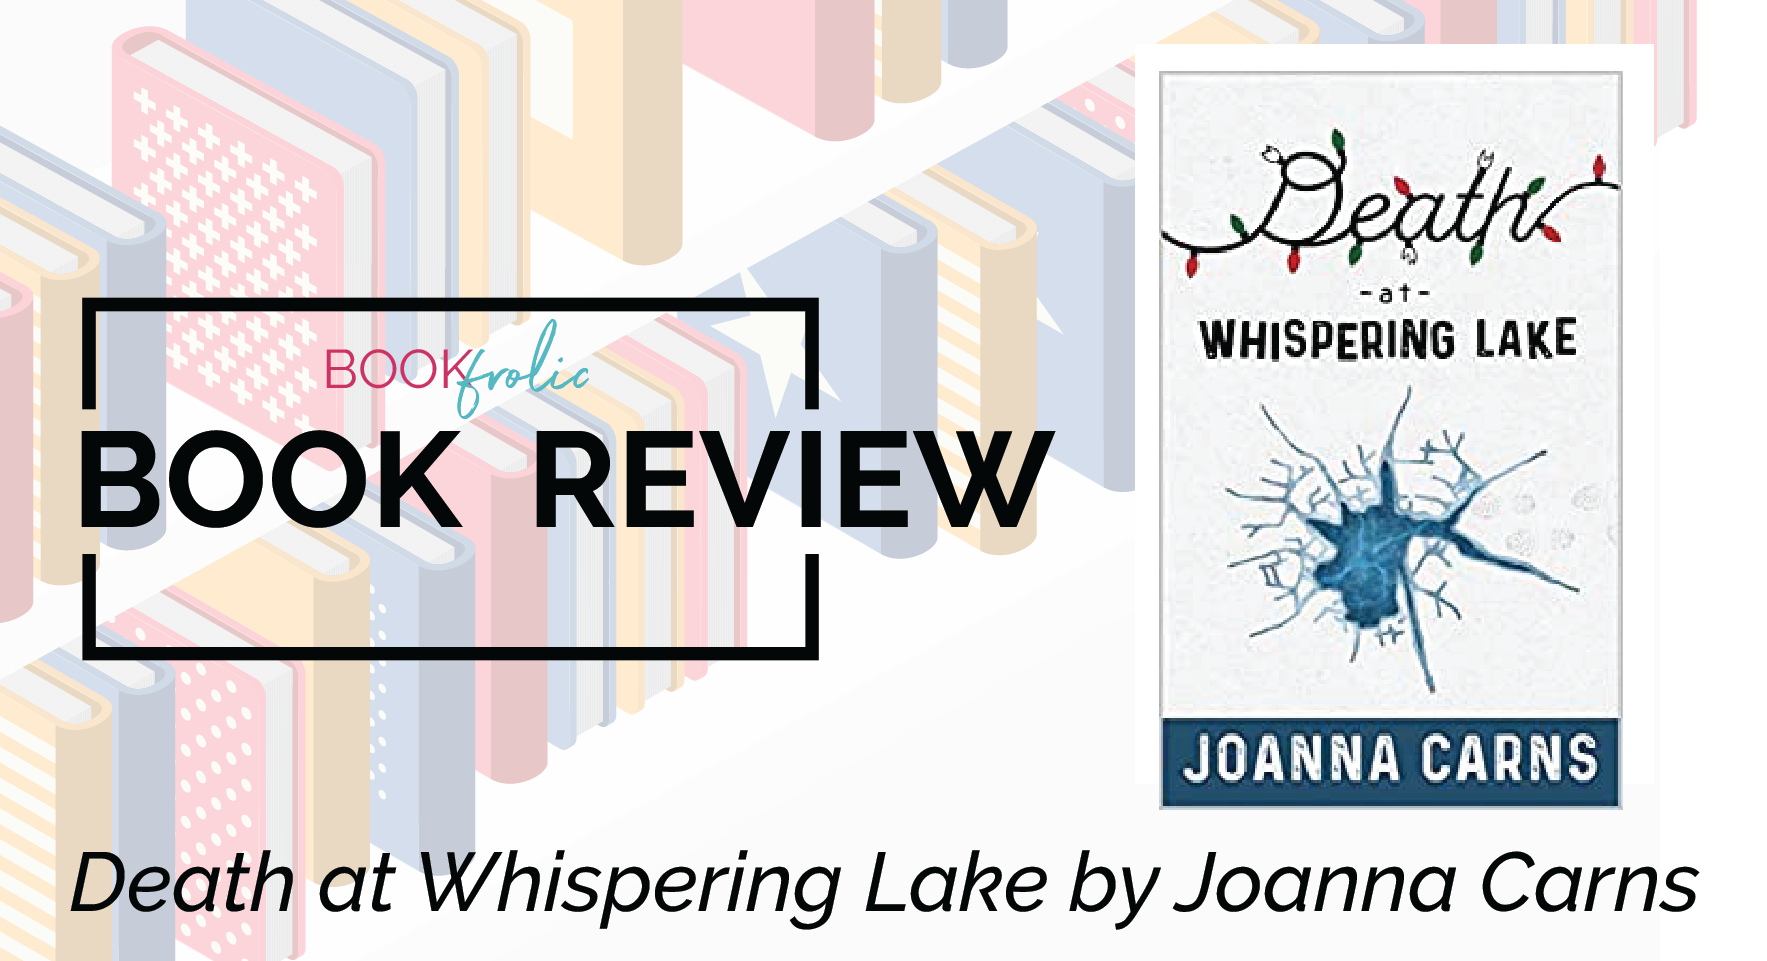 Death at Whispering Lake by Joanna Carns